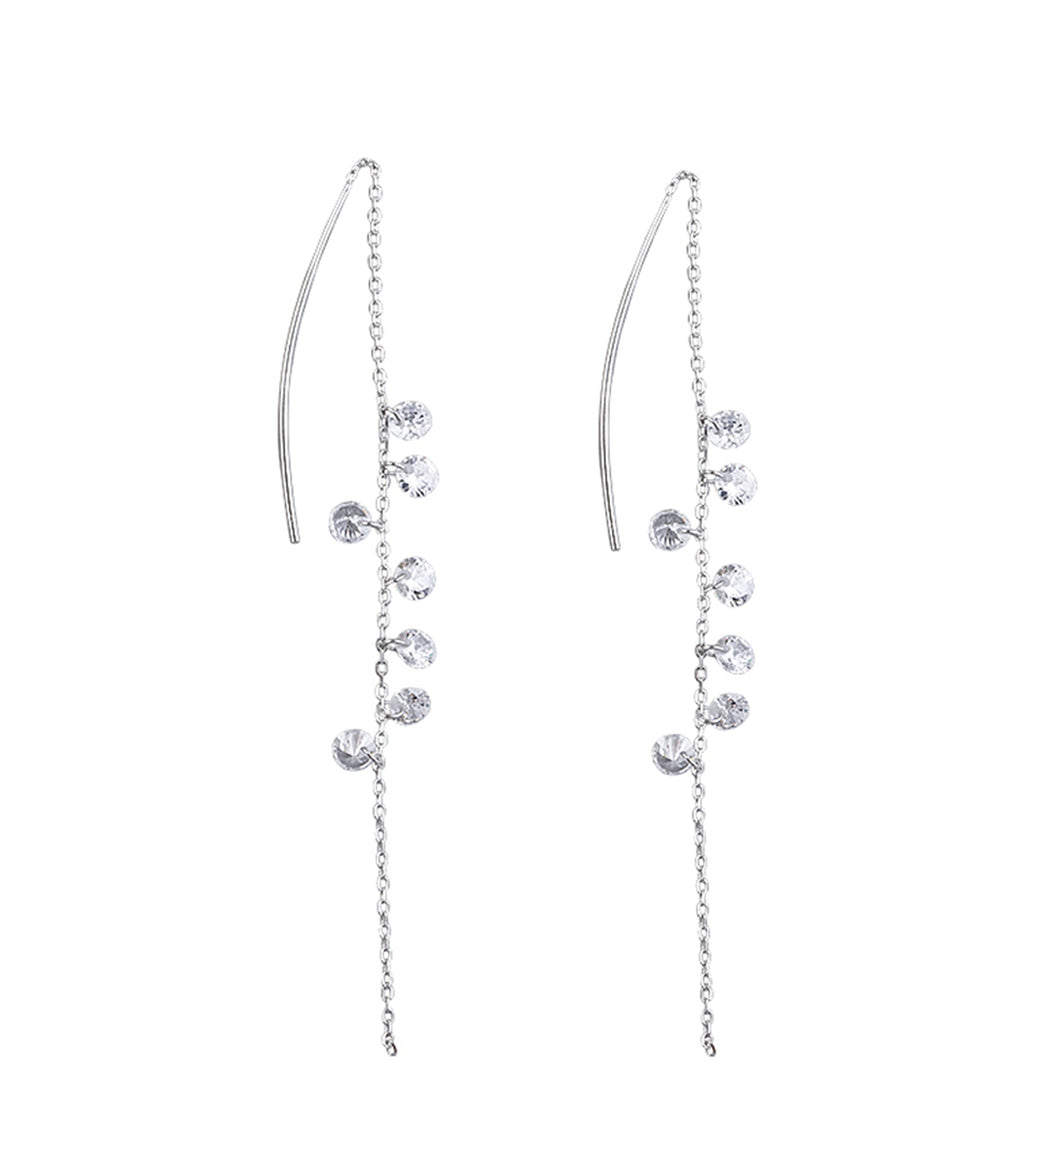 SLUYNZ 925 Sterling Silver Sparkling CZ Droplet Dangle Earrings for Women Teen Girls Elegant Long Threader Earrings